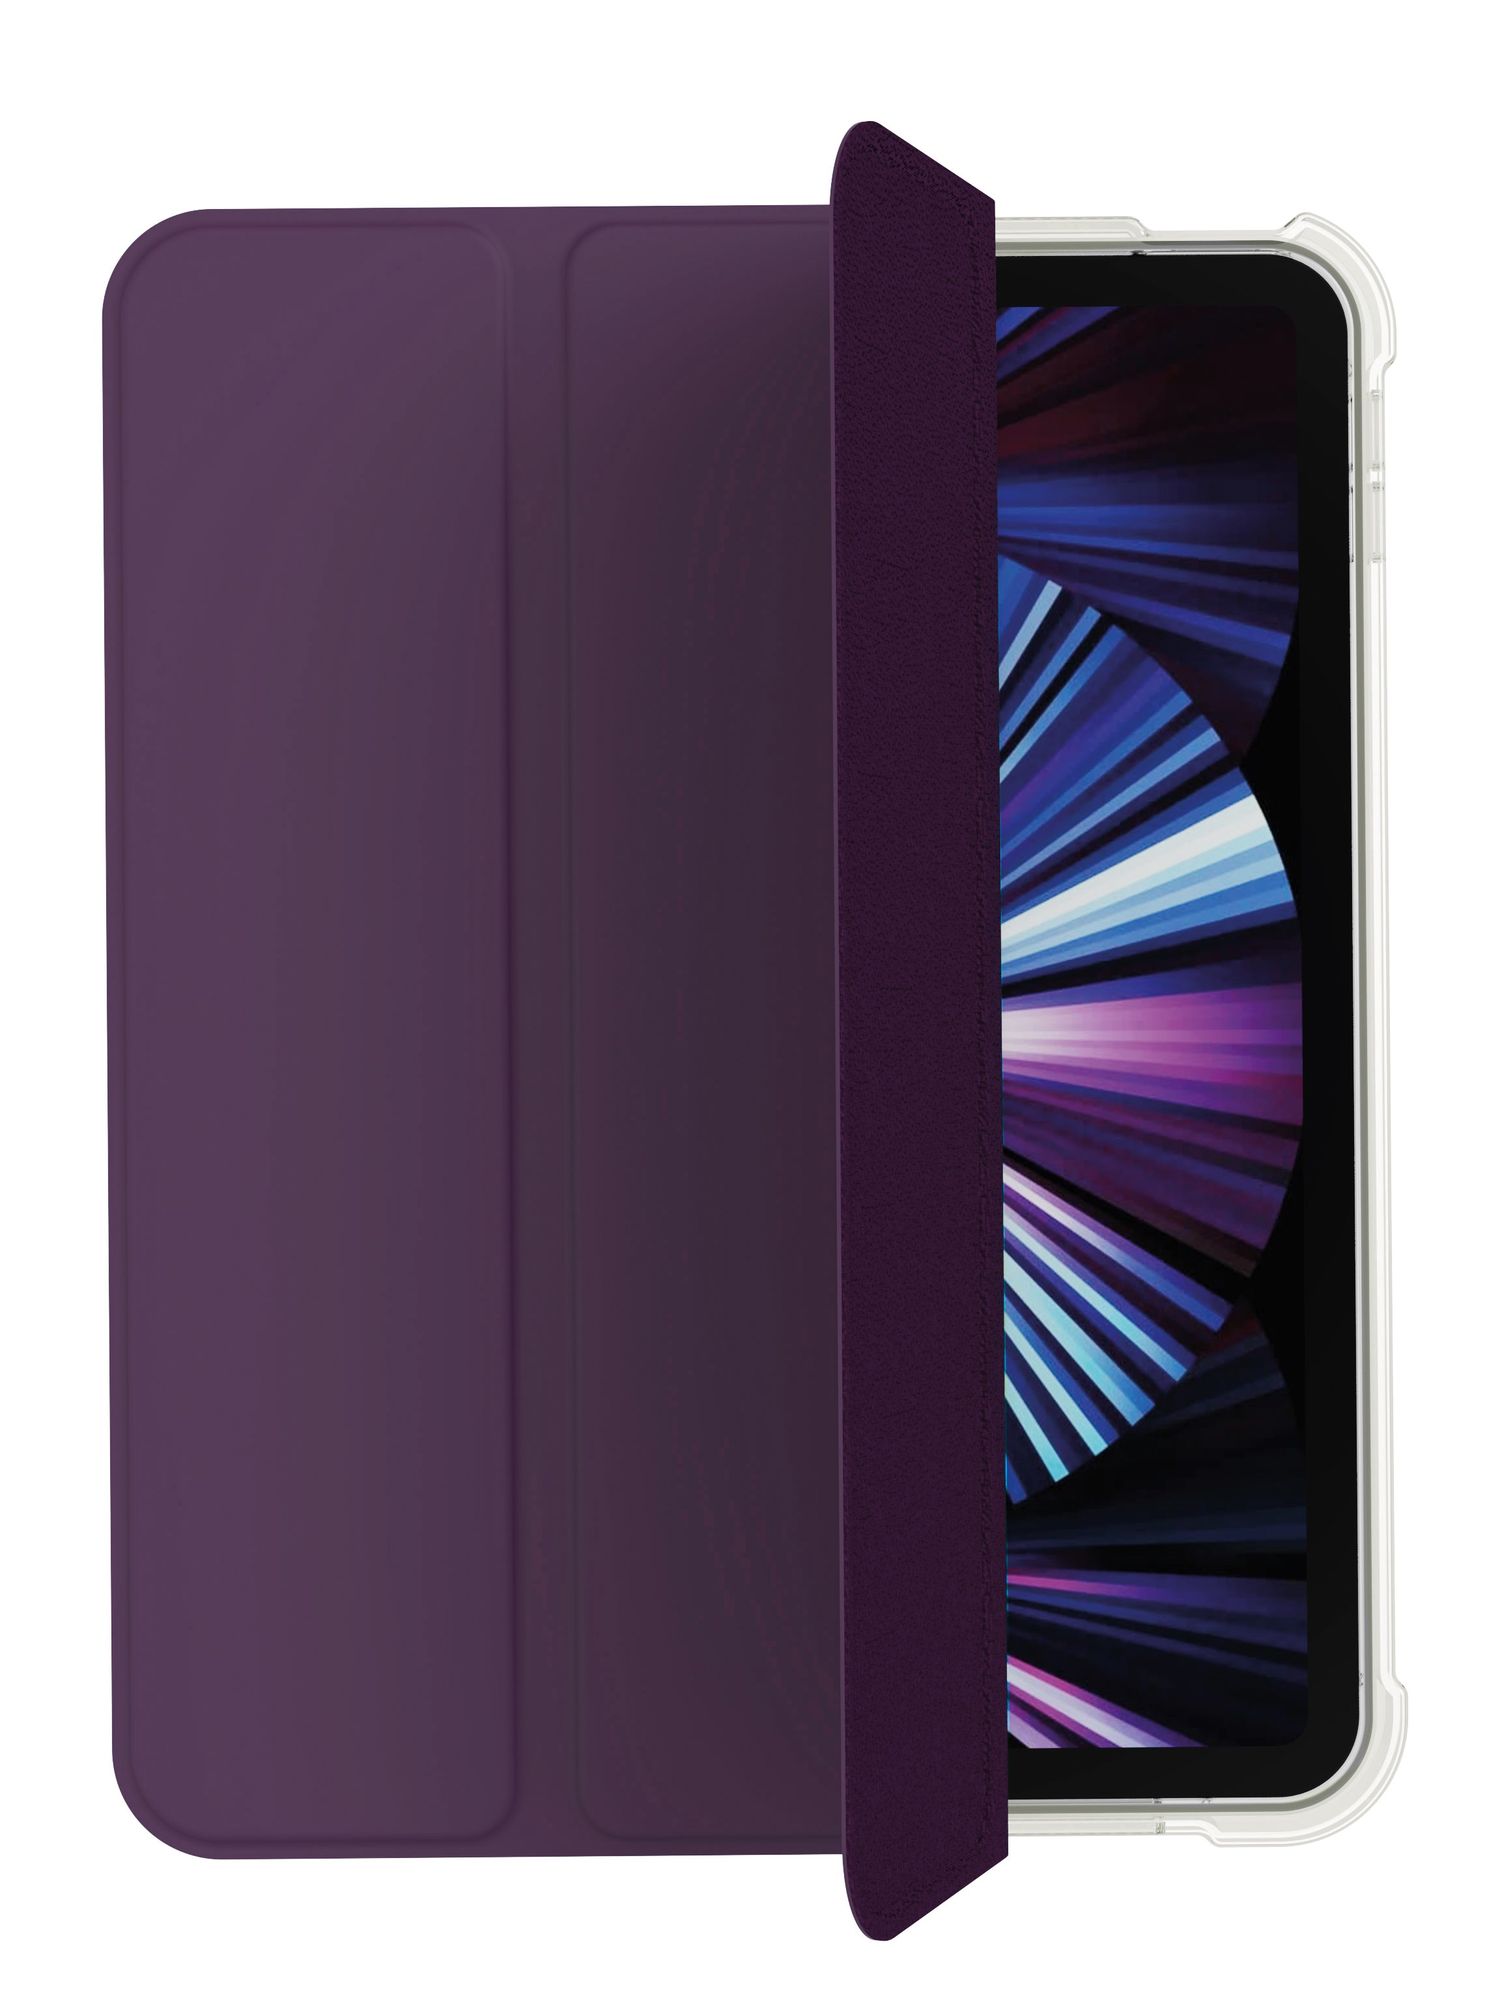 Чехол защитный VLP Dual Folio Case для iPad 10, темно-фиолетовый for ipad 10 2 7th gen 8th generation case for ipad 10 2 9 th gen 2021 case smart cover for ipad 10 2 case 2020 ipad 8 coque capa